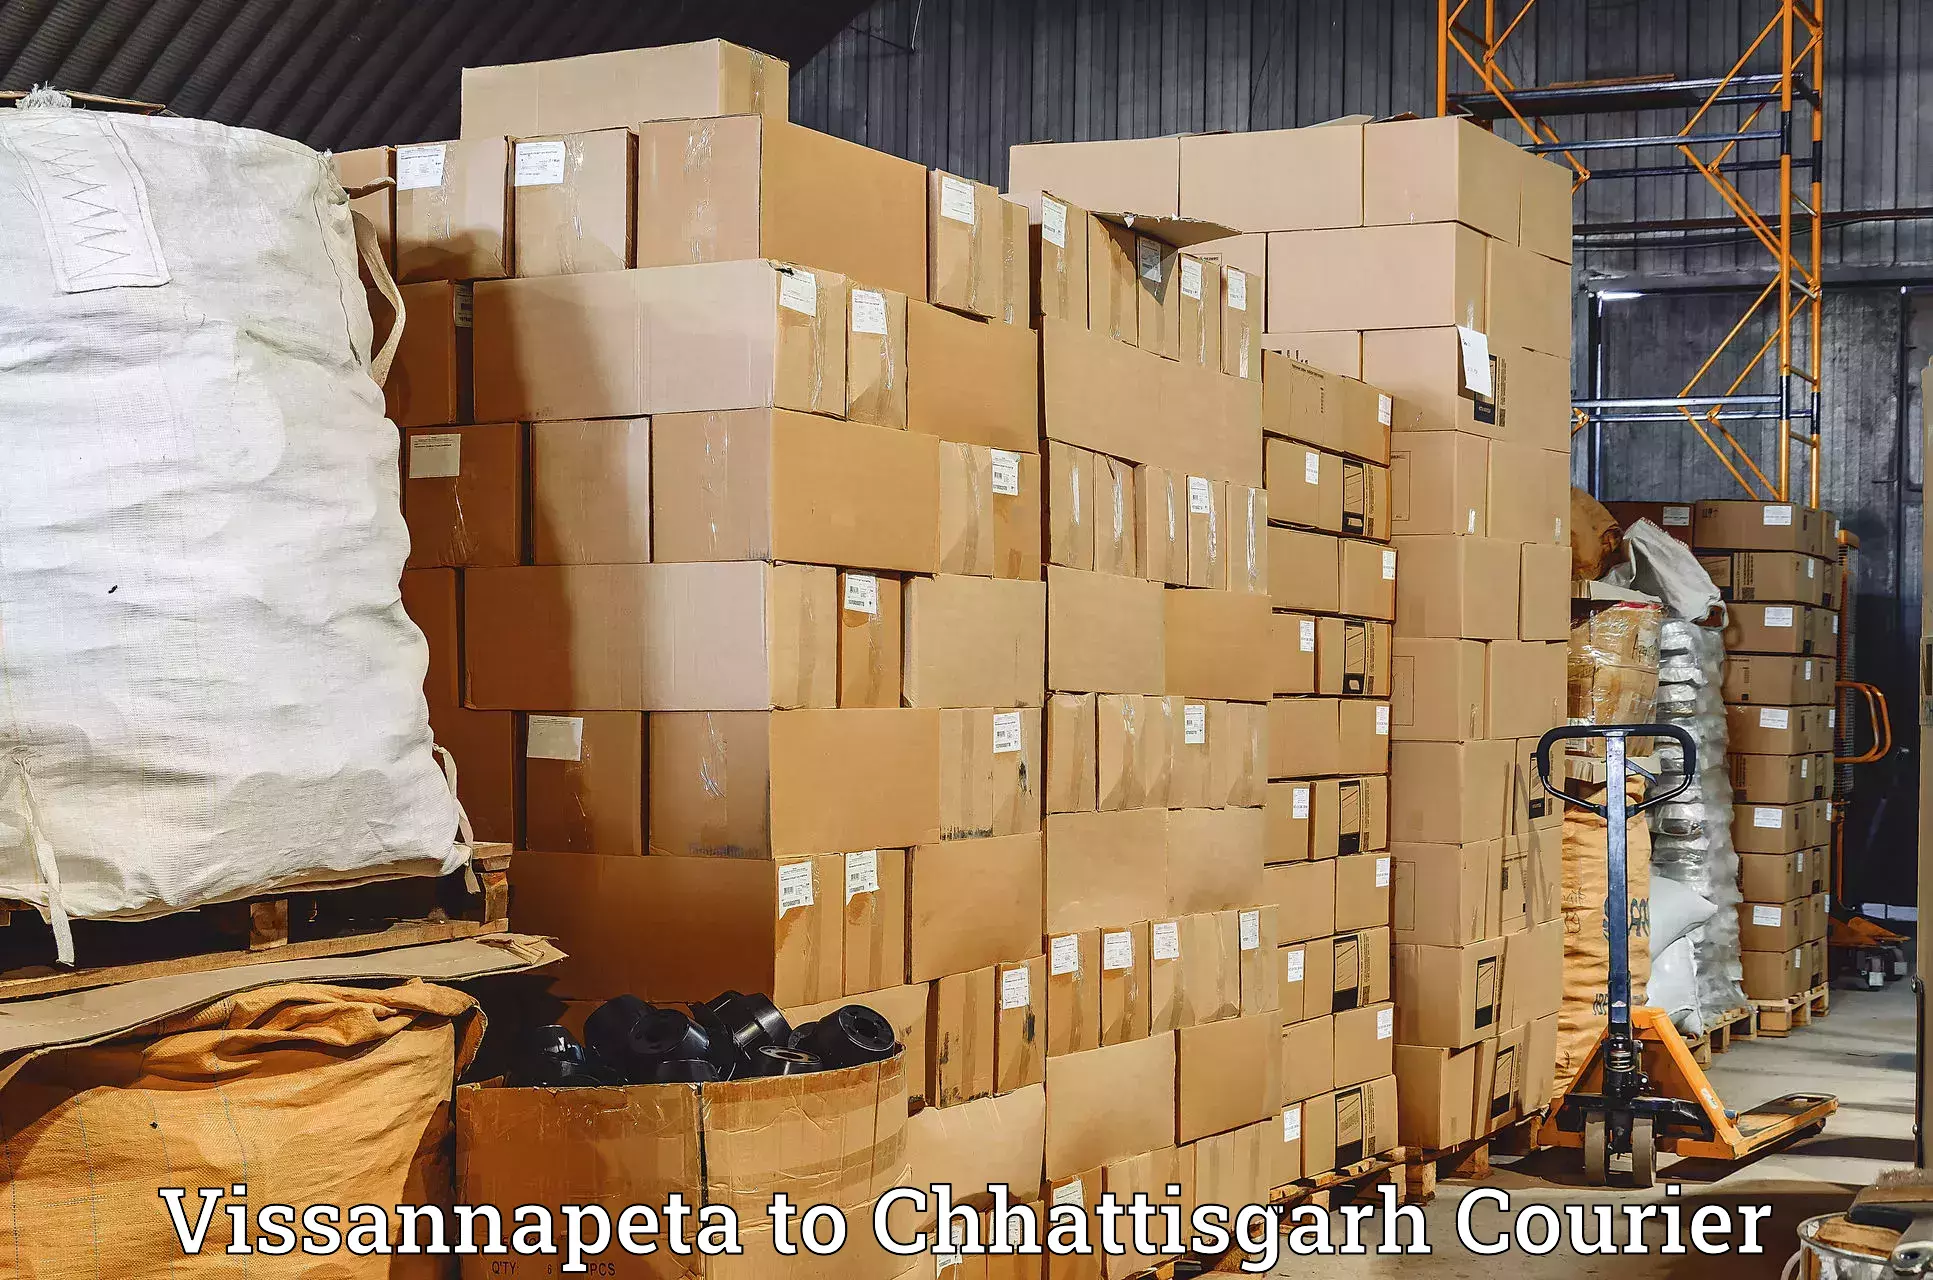 Courier insurance Vissannapeta to Chhattisgarh